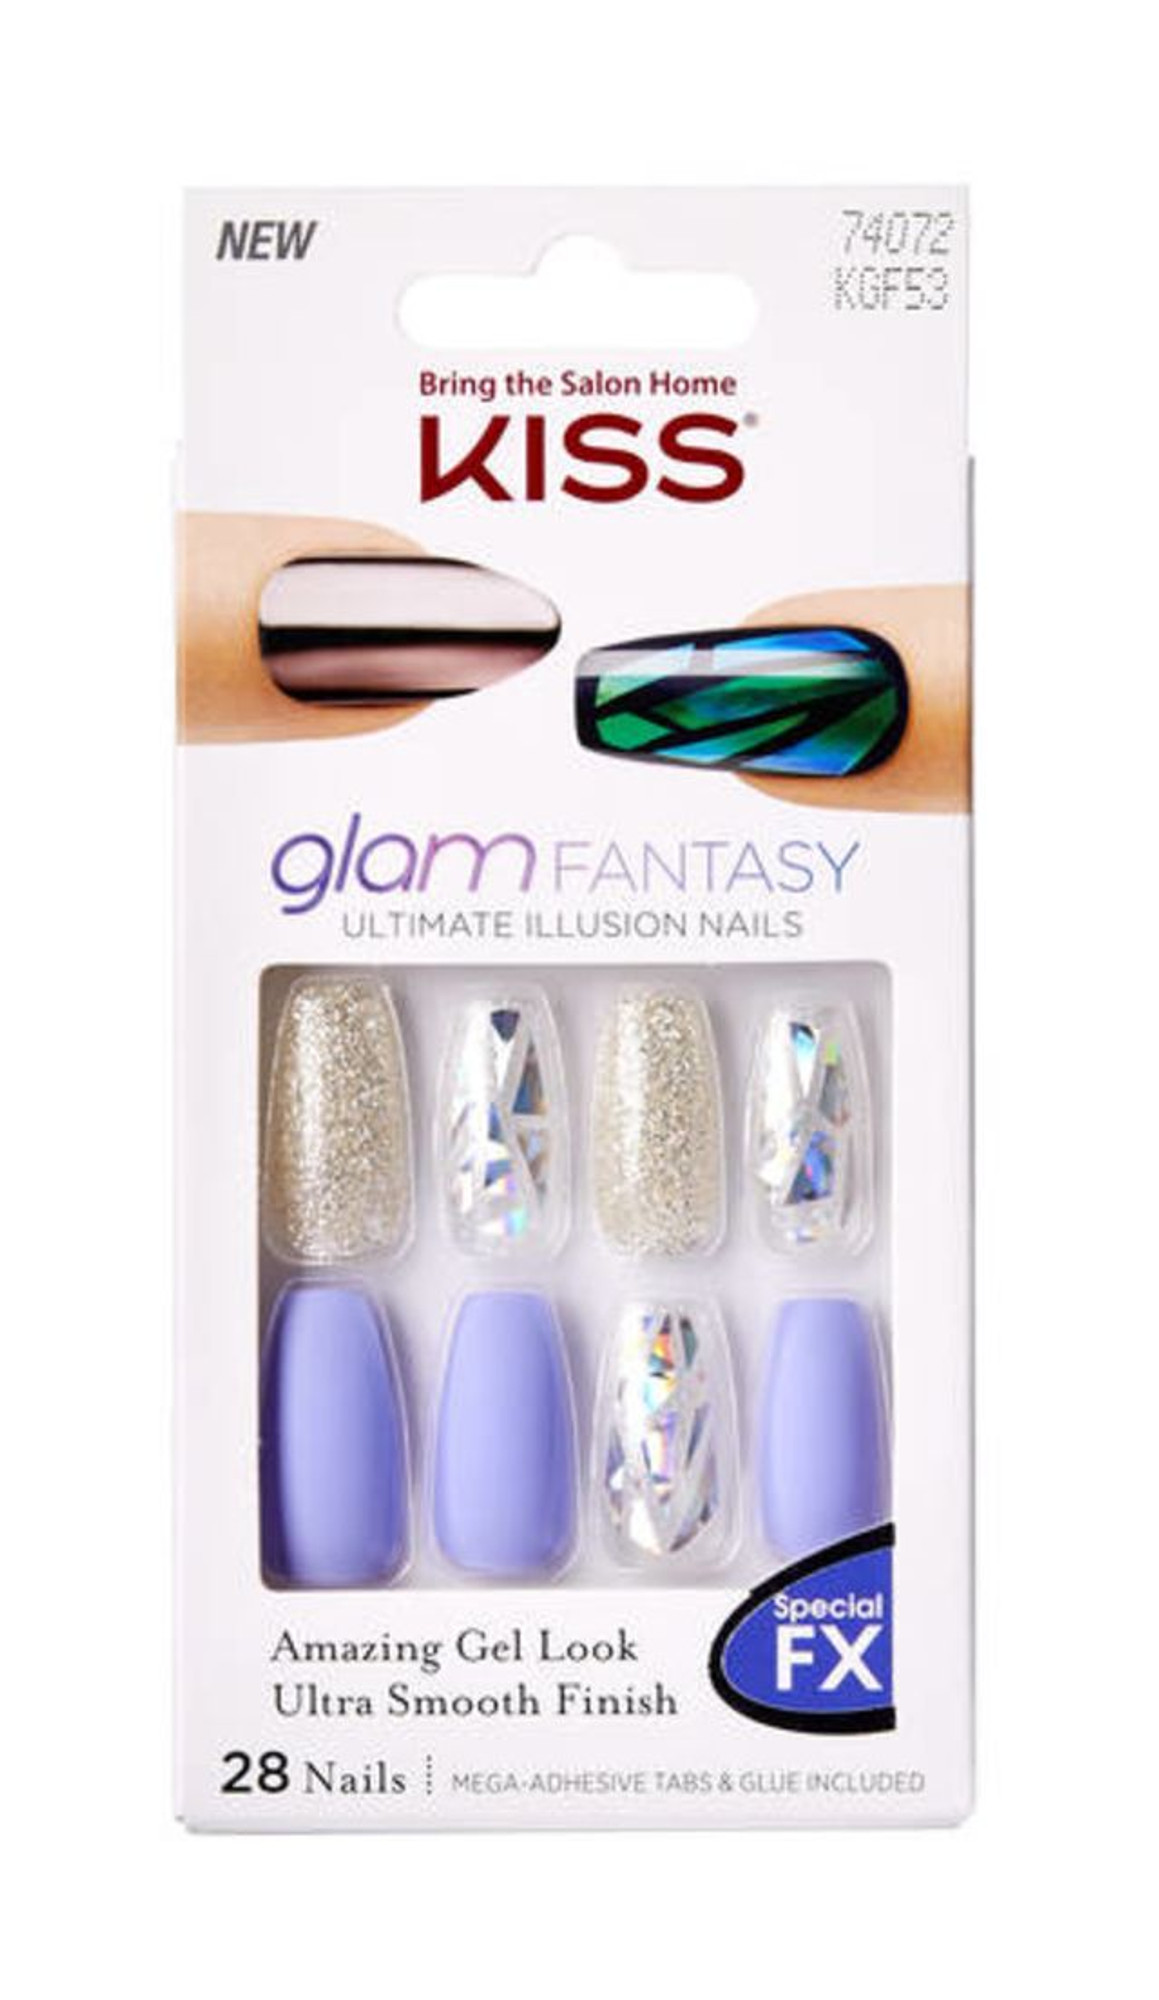 KISS GLAM FANTASY Ultimate Illusion Nails